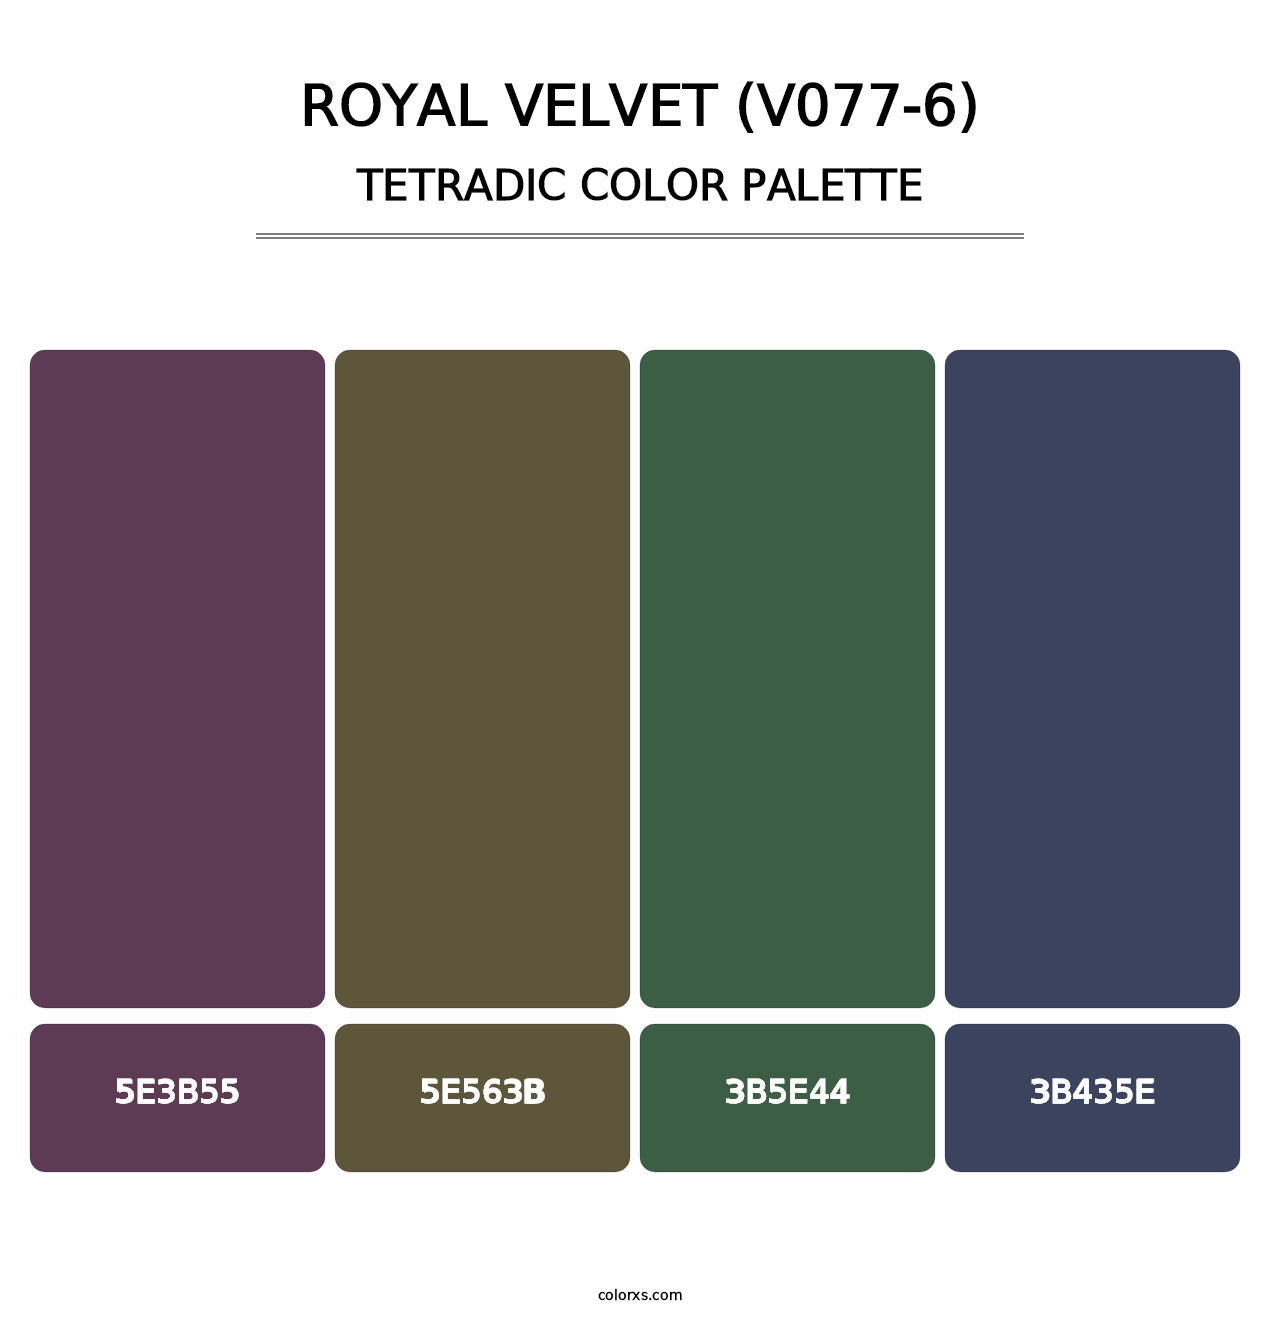 Royal Velvet (V077-6) - Tetradic Color Palette